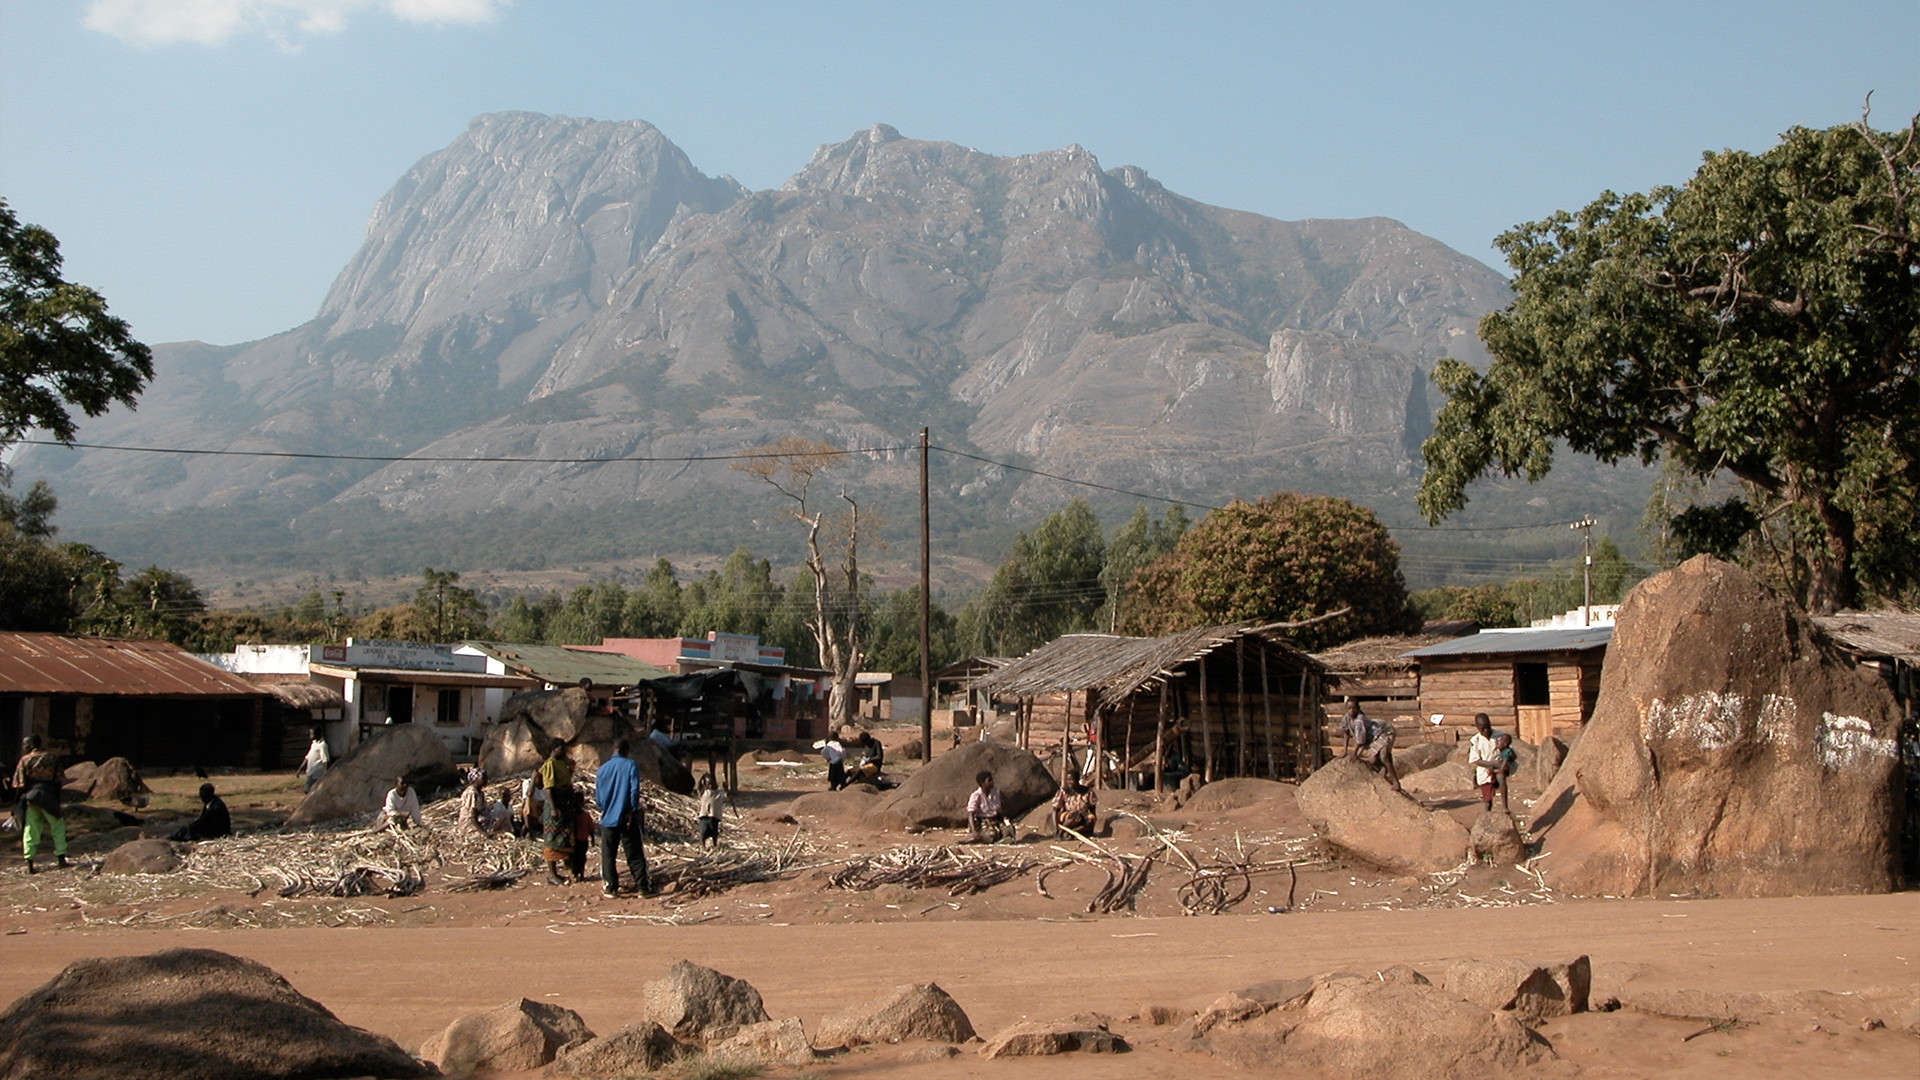 Le massif Mulanje au Malawi (Photo: alexantener/wikimediacommons)